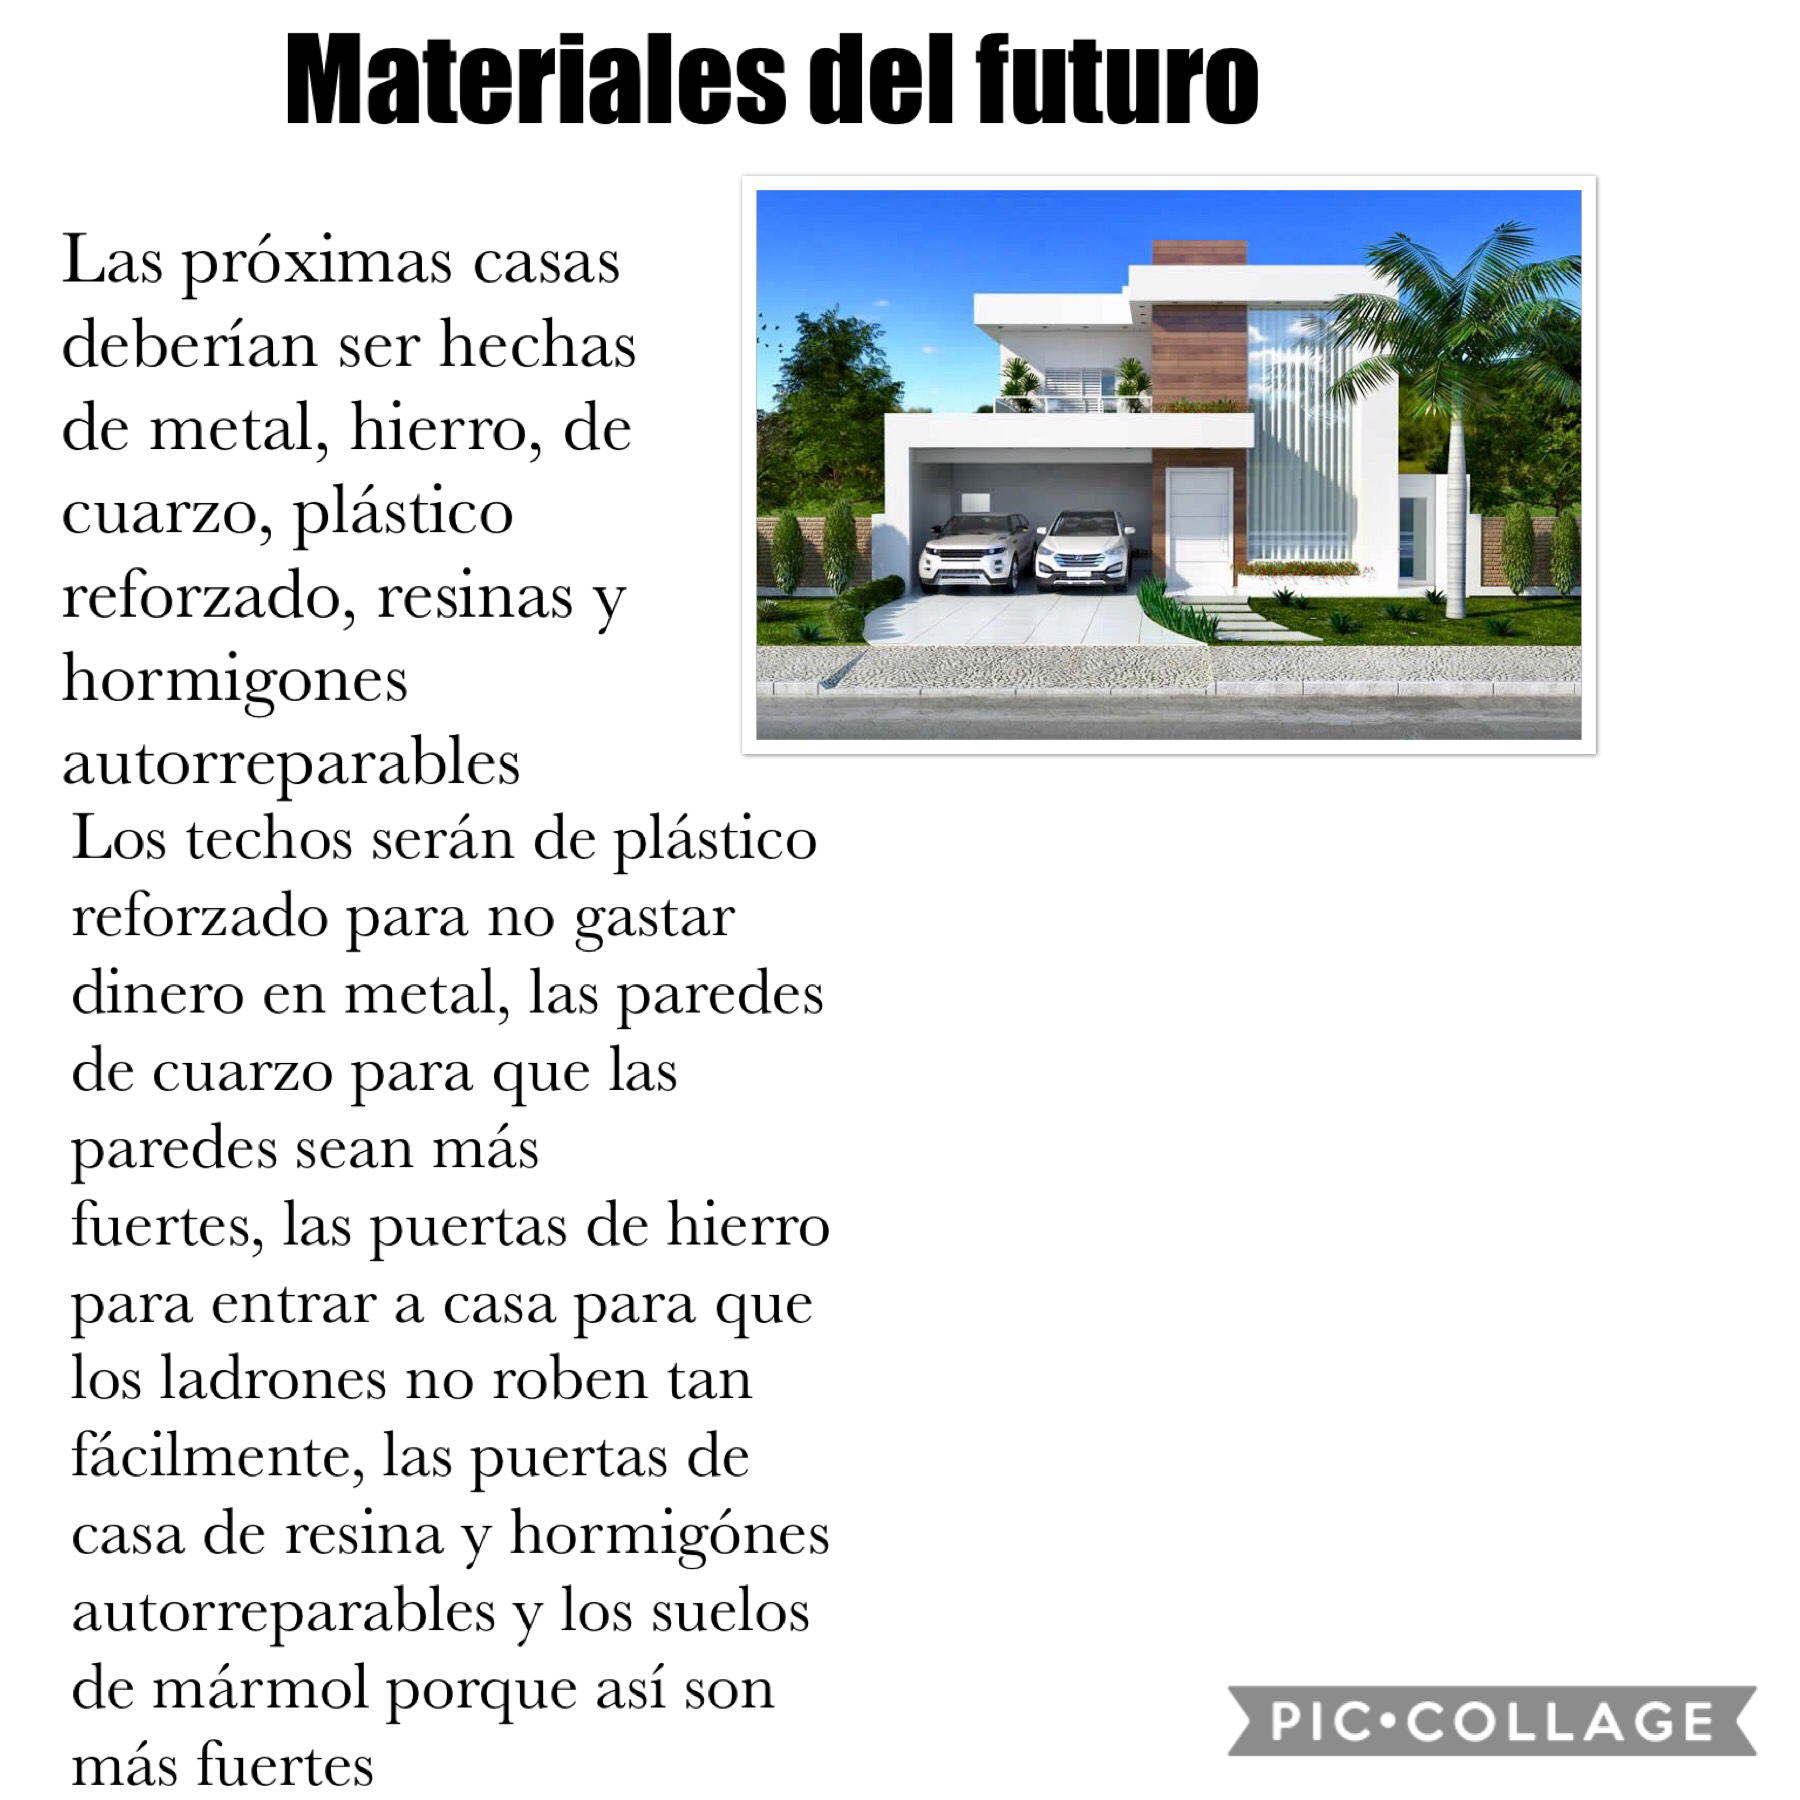 La casa del futuro